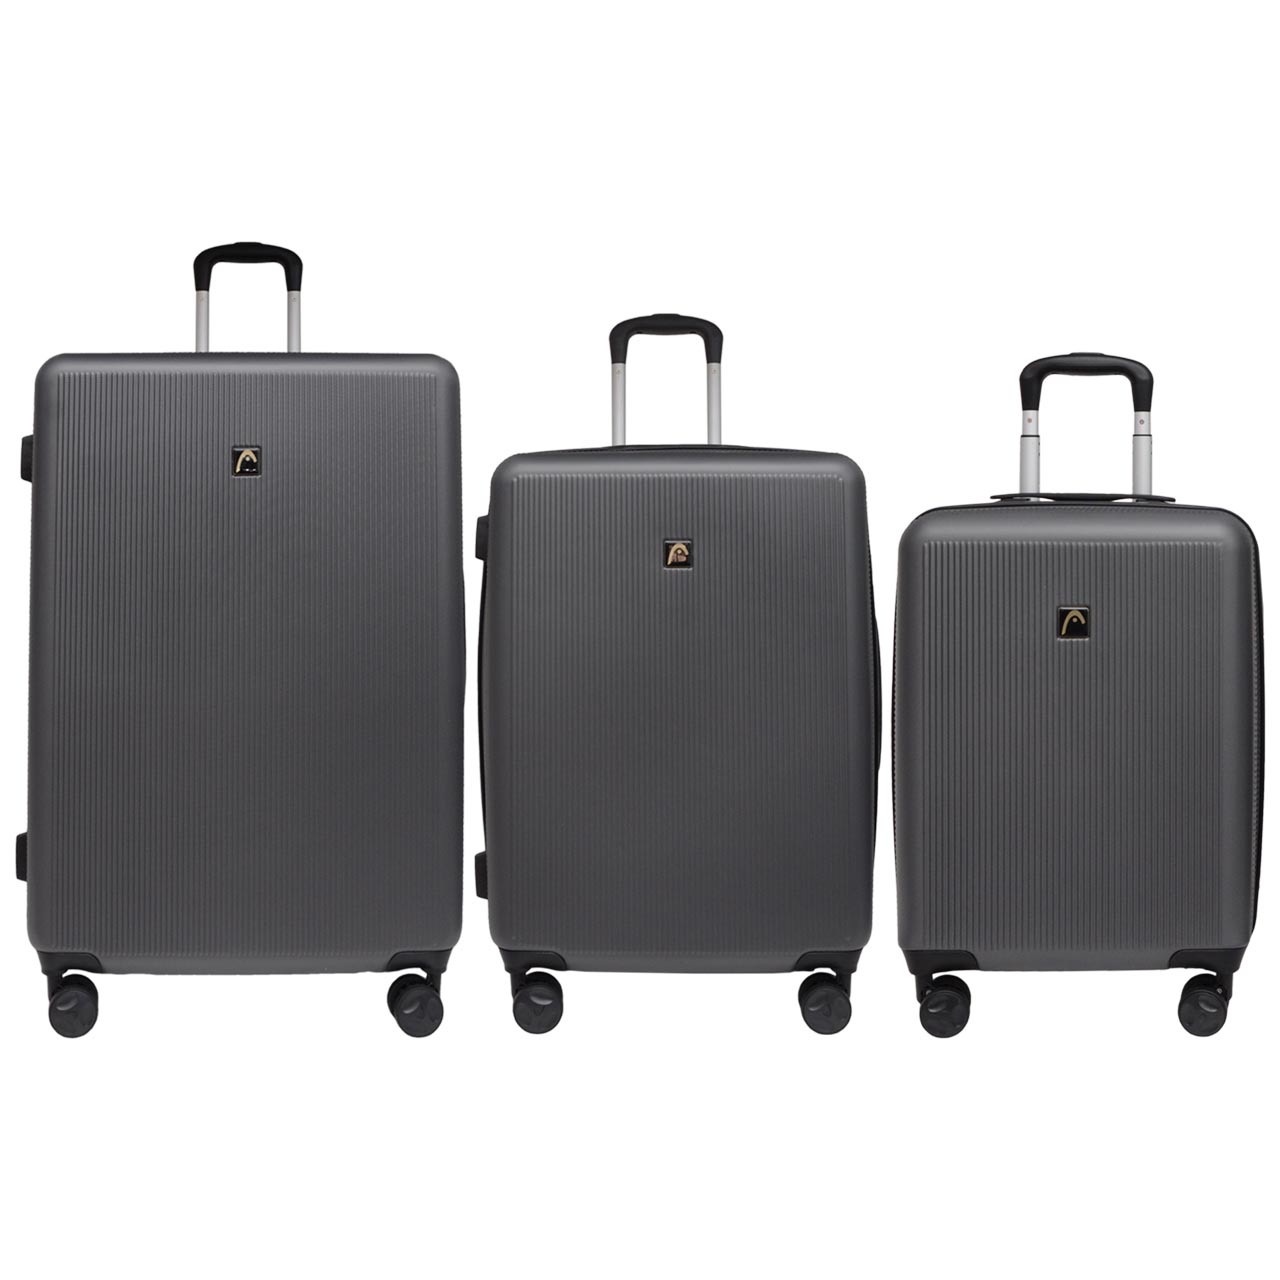 مجموعه سه عددی چمدان هد مدل HL 006 -  - 6